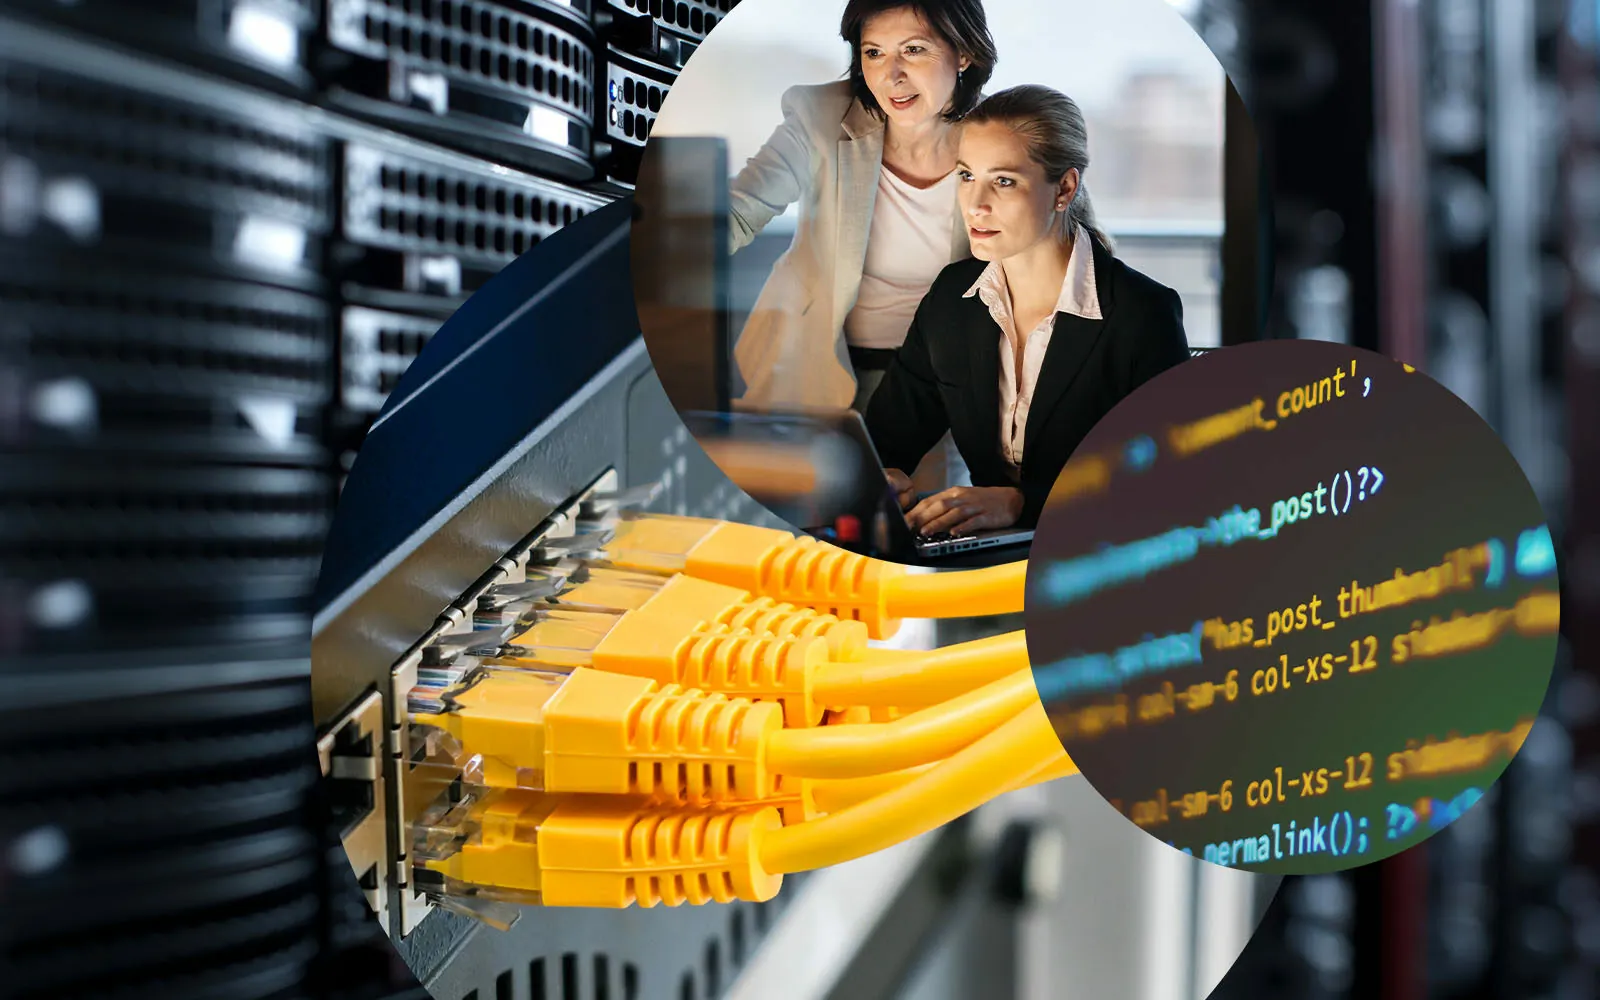 Bild von Kabeln und Codes auf einem Bildschirm, daneben zwei Frauen vor einem Computer; Darknet-Monitoring